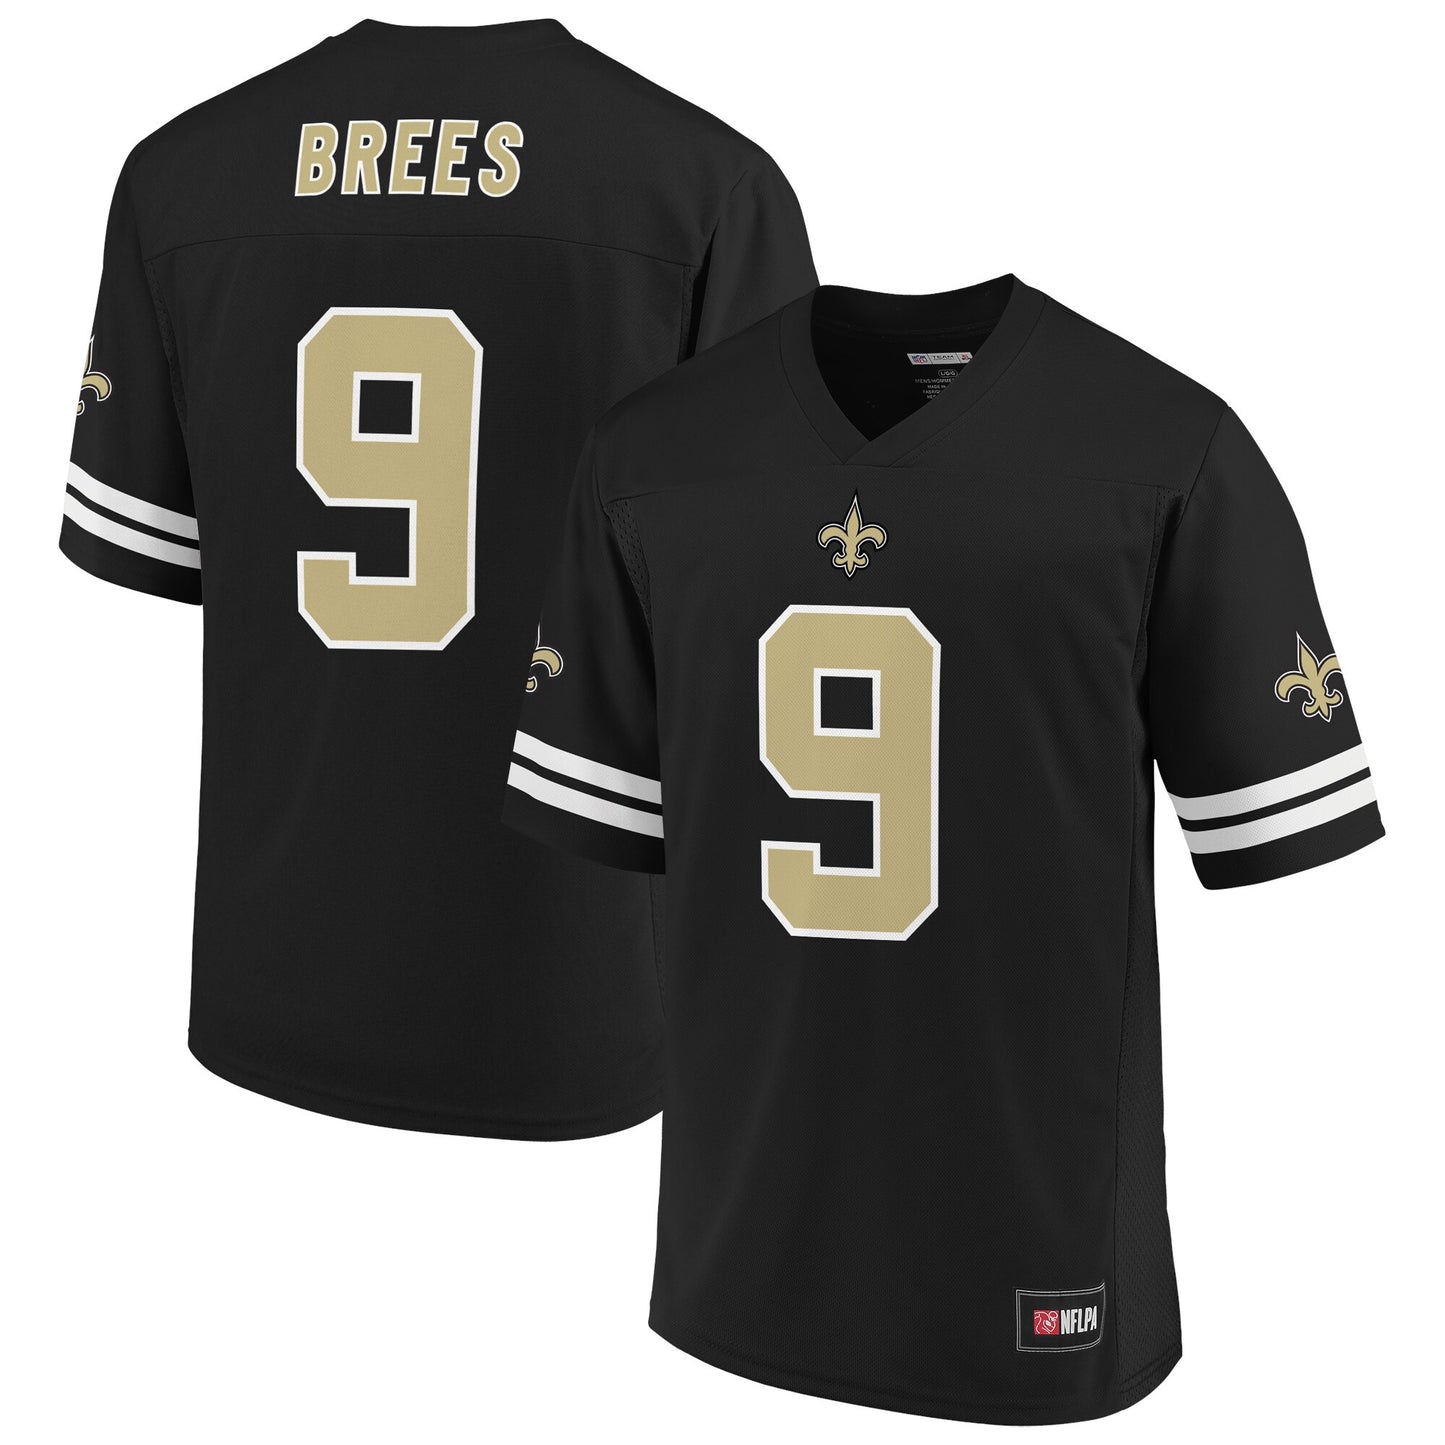 Men's NFL Pro Line by Drew Brees Black New Orleans Saints Player Jersey